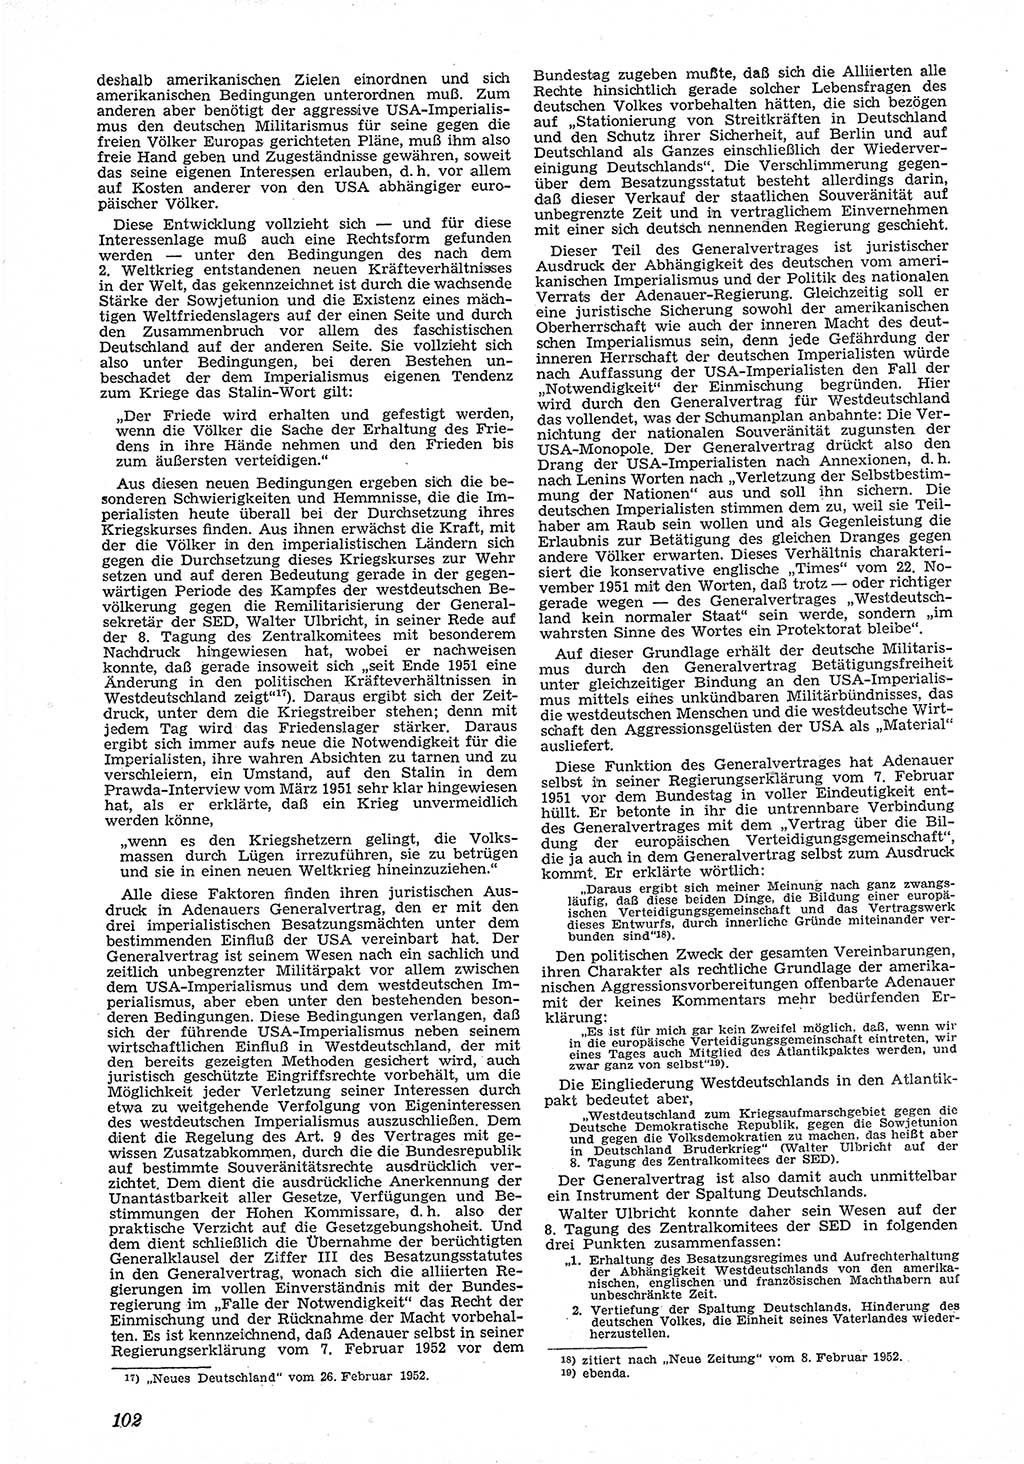 Neue Justiz (NJ), Zeitschrift für Recht und Rechtswissenschaft [Deutsche Demokratische Republik (DDR)], 6. Jahrgang 1952, Seite 102 (NJ DDR 1952, S. 102)